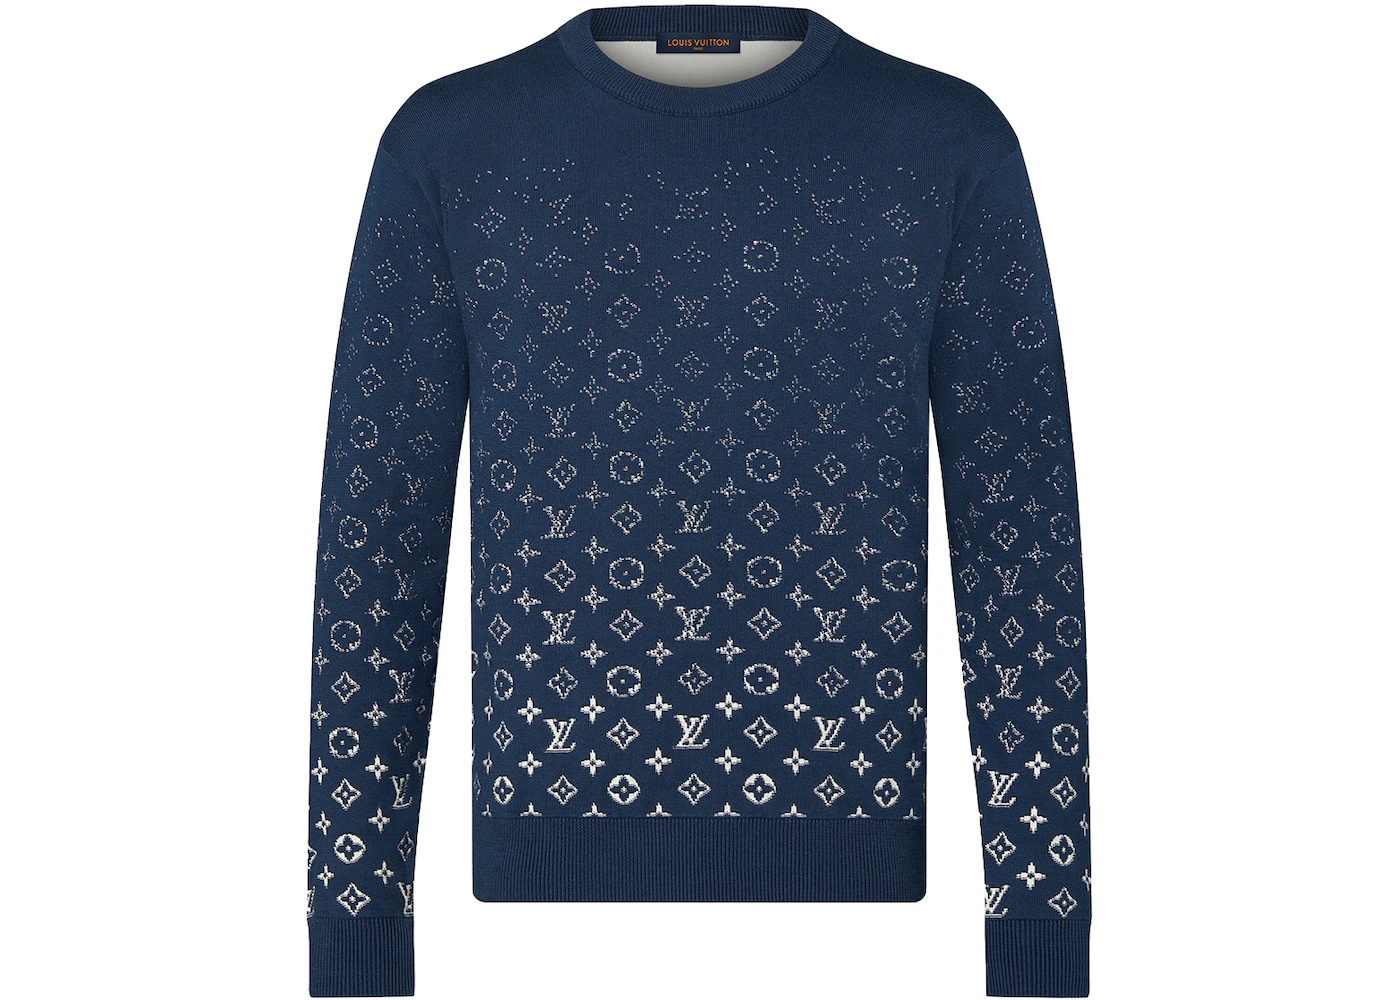 Louis Vuitton, Sweaters, Louis Vuitton Monogram Crewneck